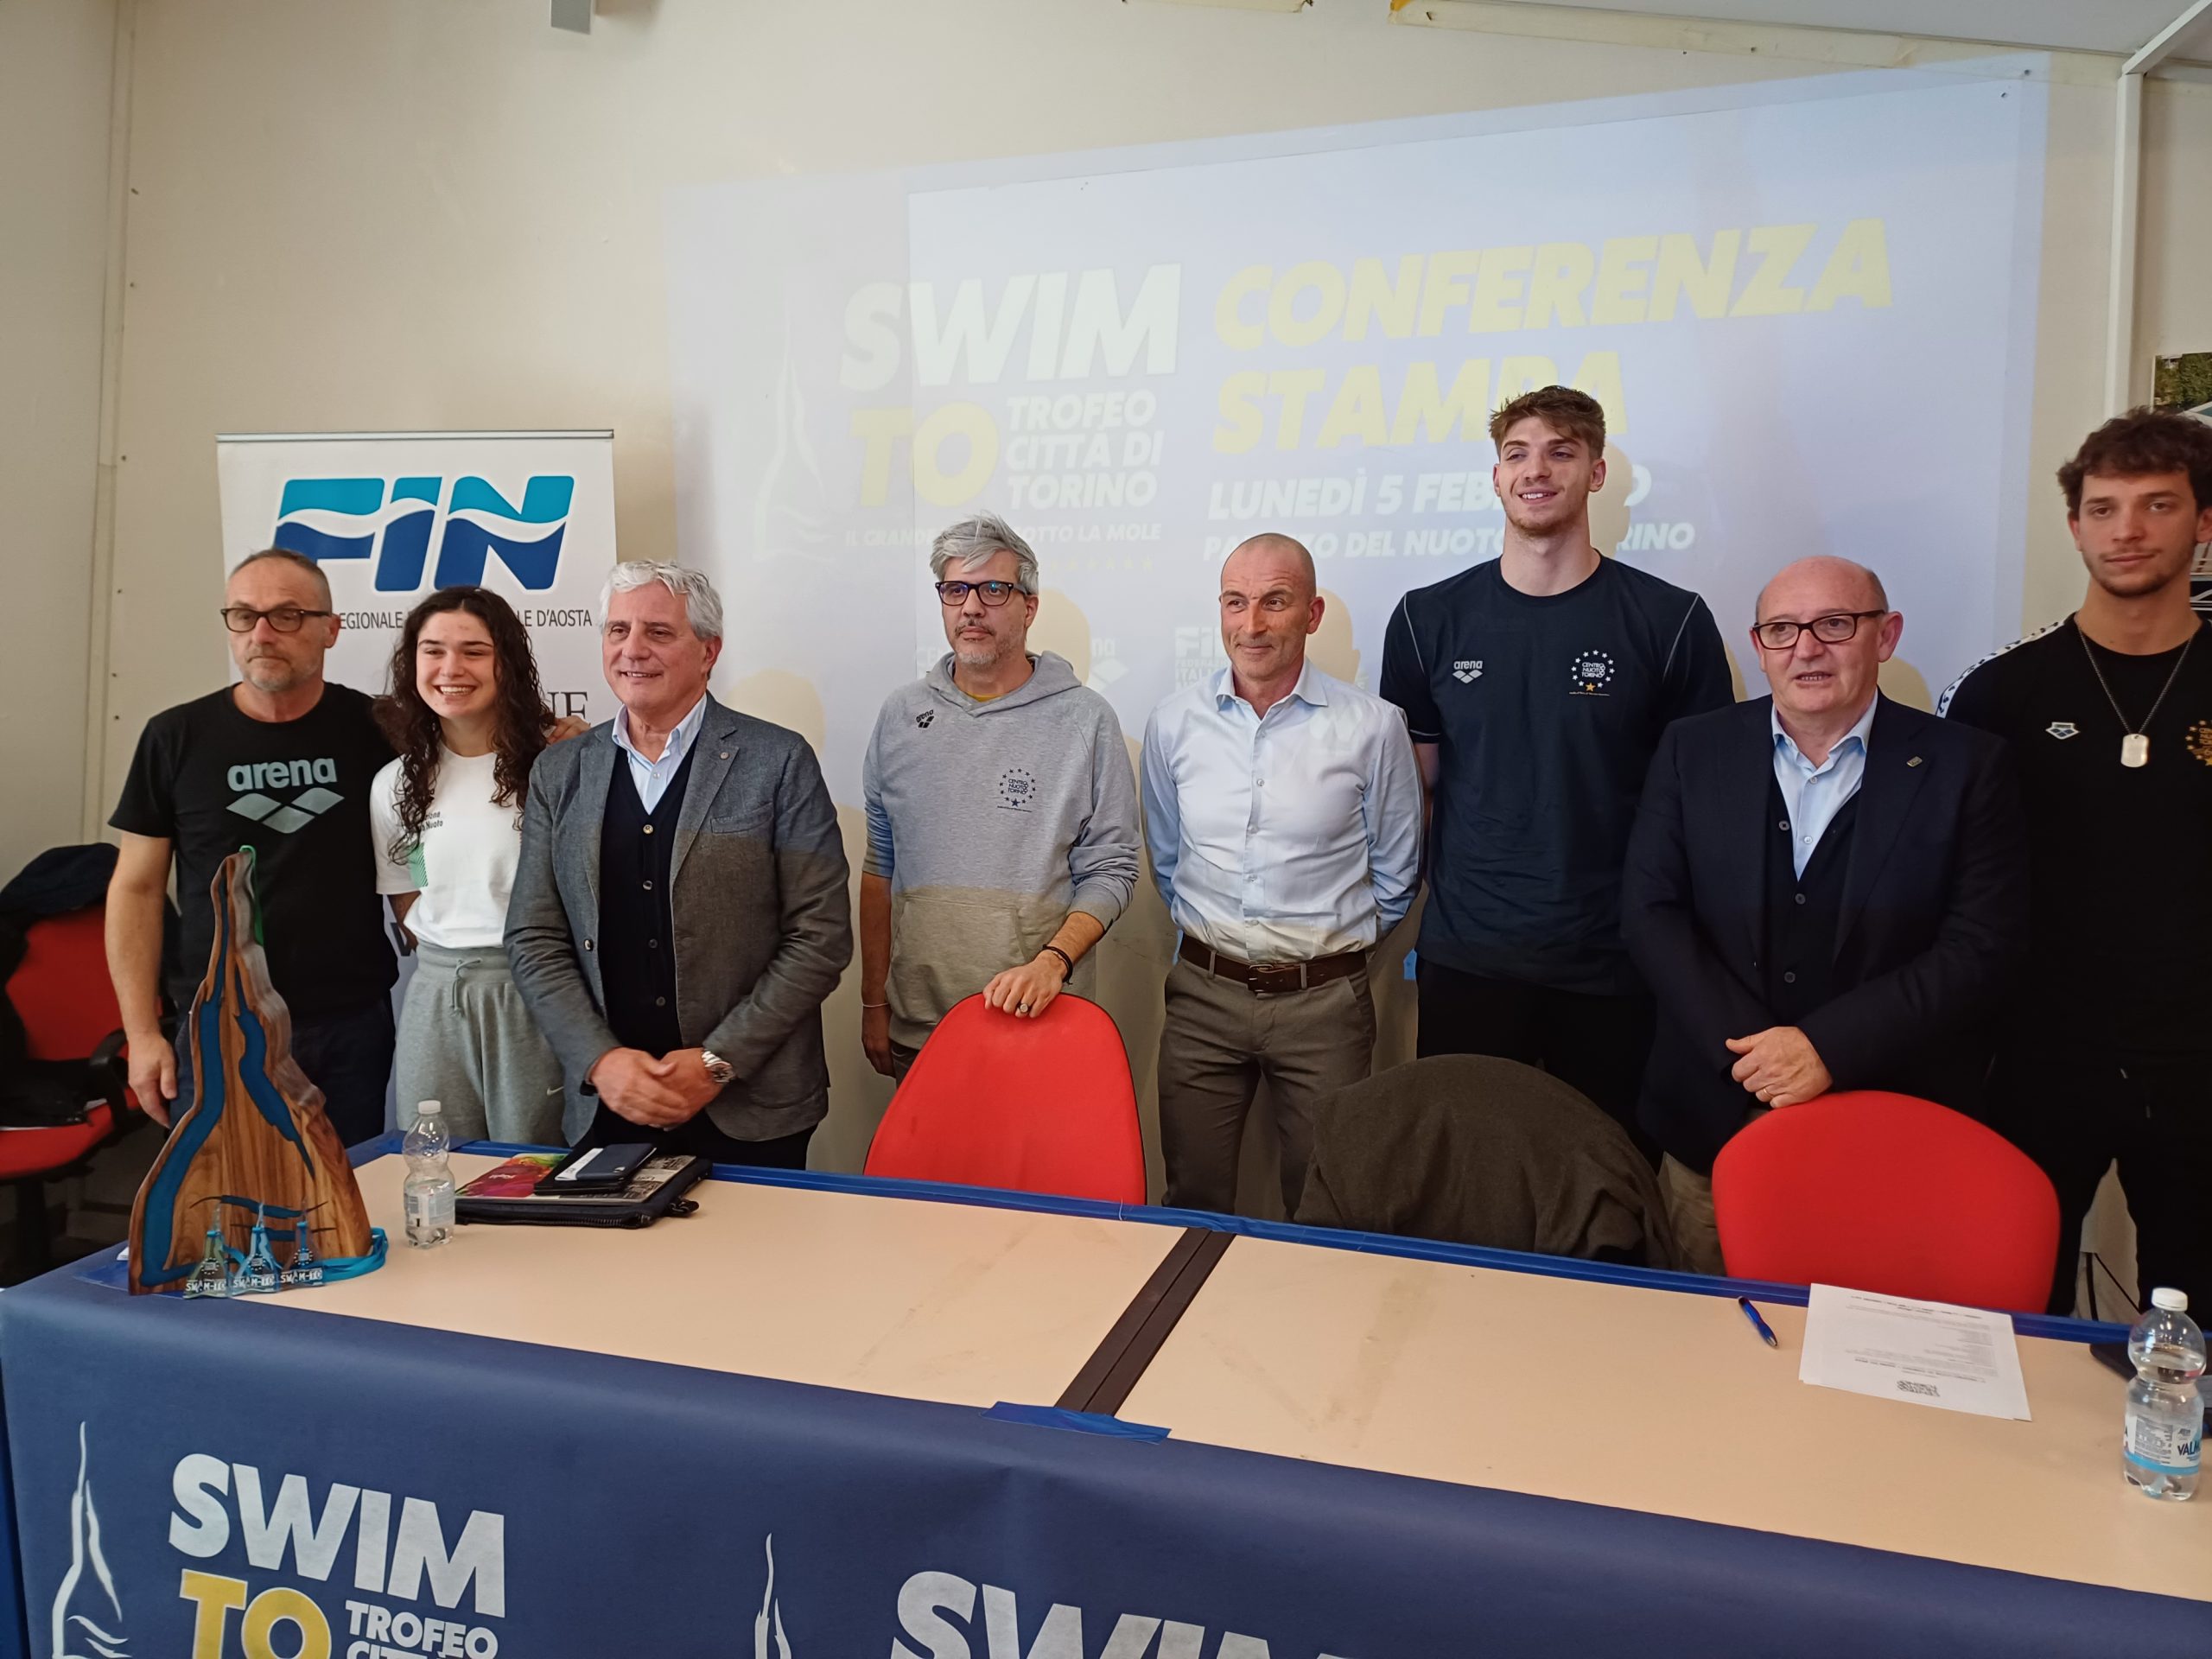 SWIM – TO il nuoto di alto livello di nuovo sotto la Mole